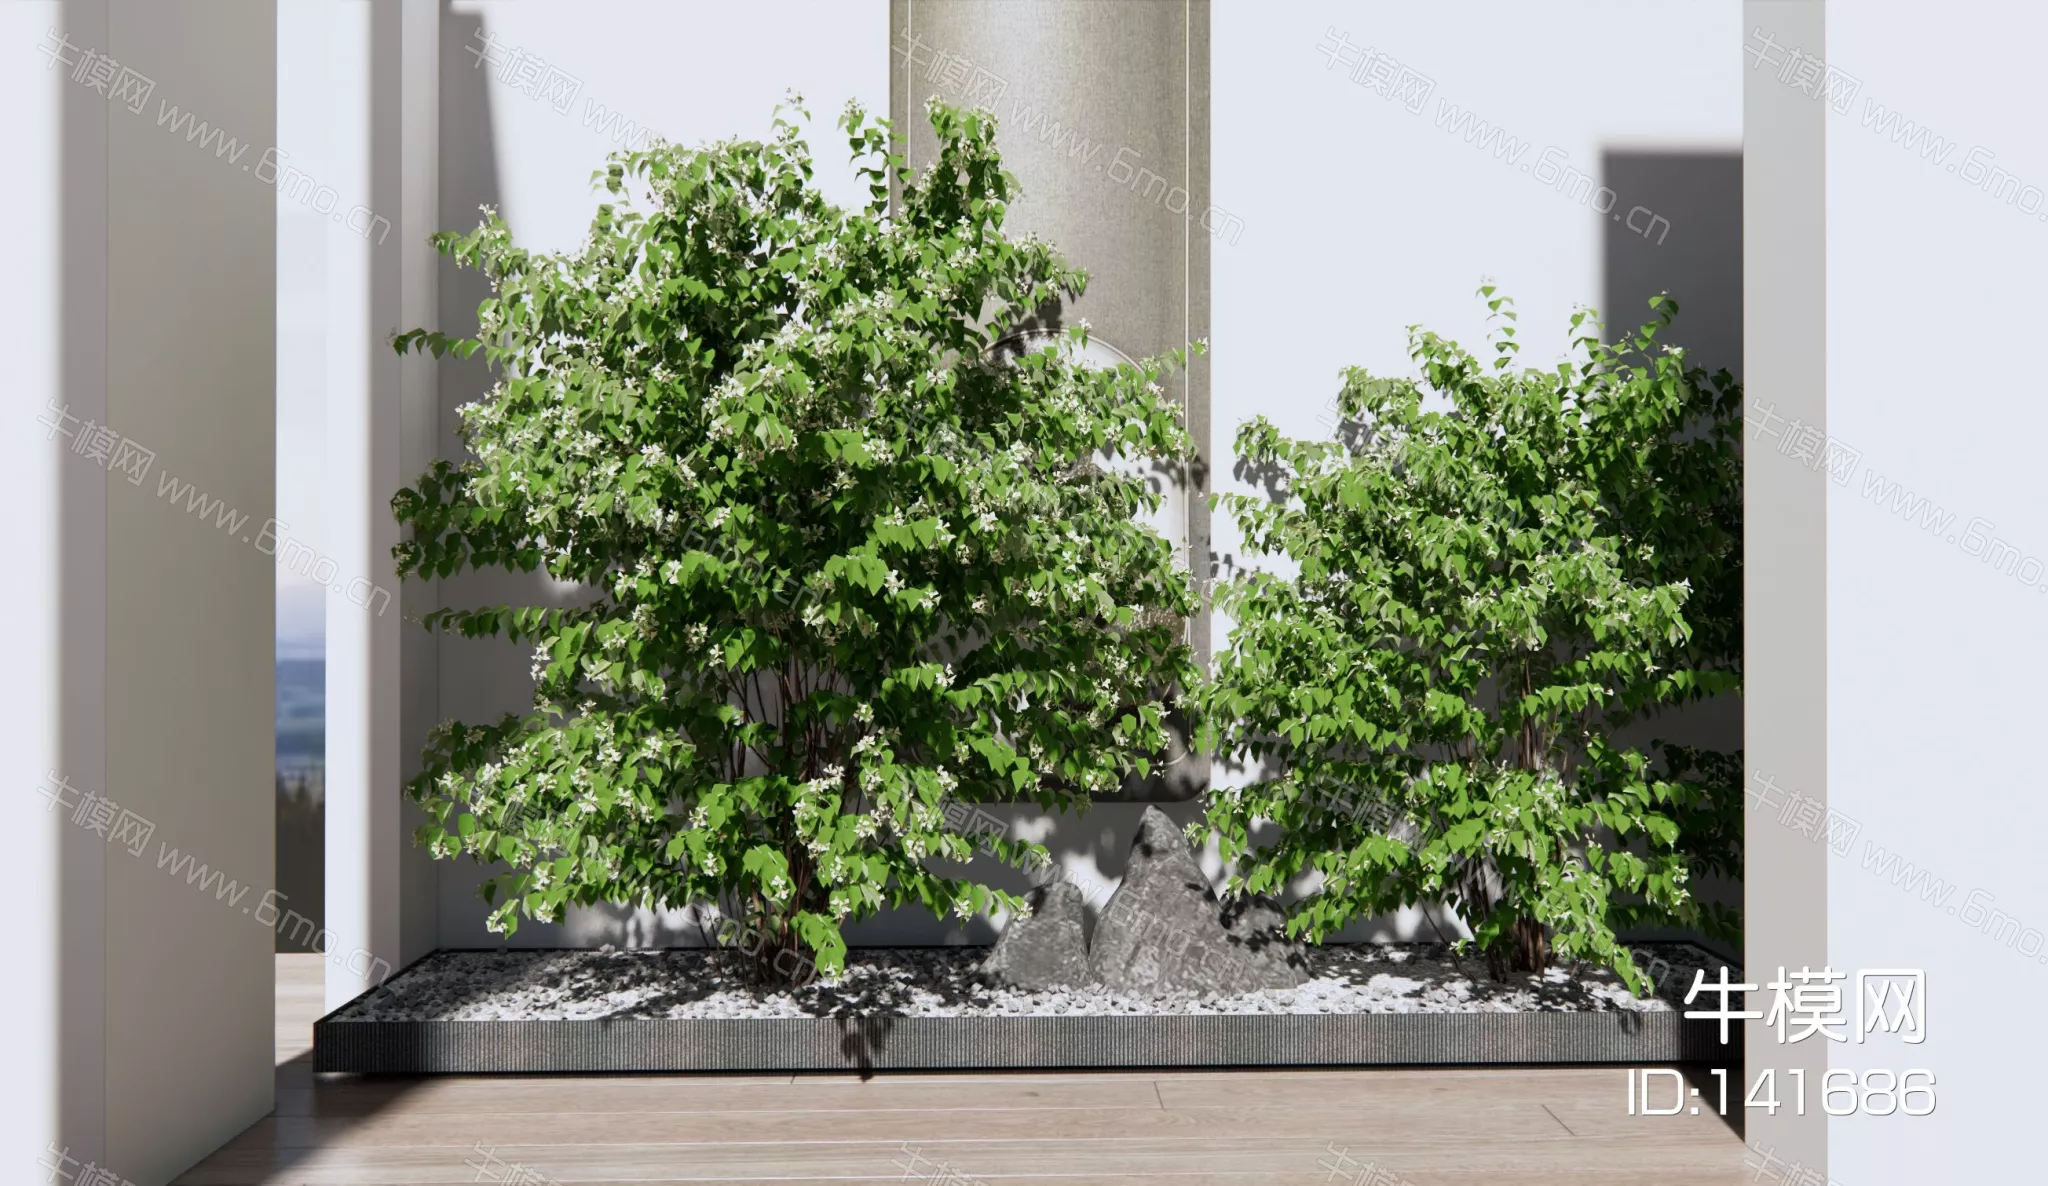 MODERN TREE - SKETCHUP 3D MODEL - ENSCAPE - 141686